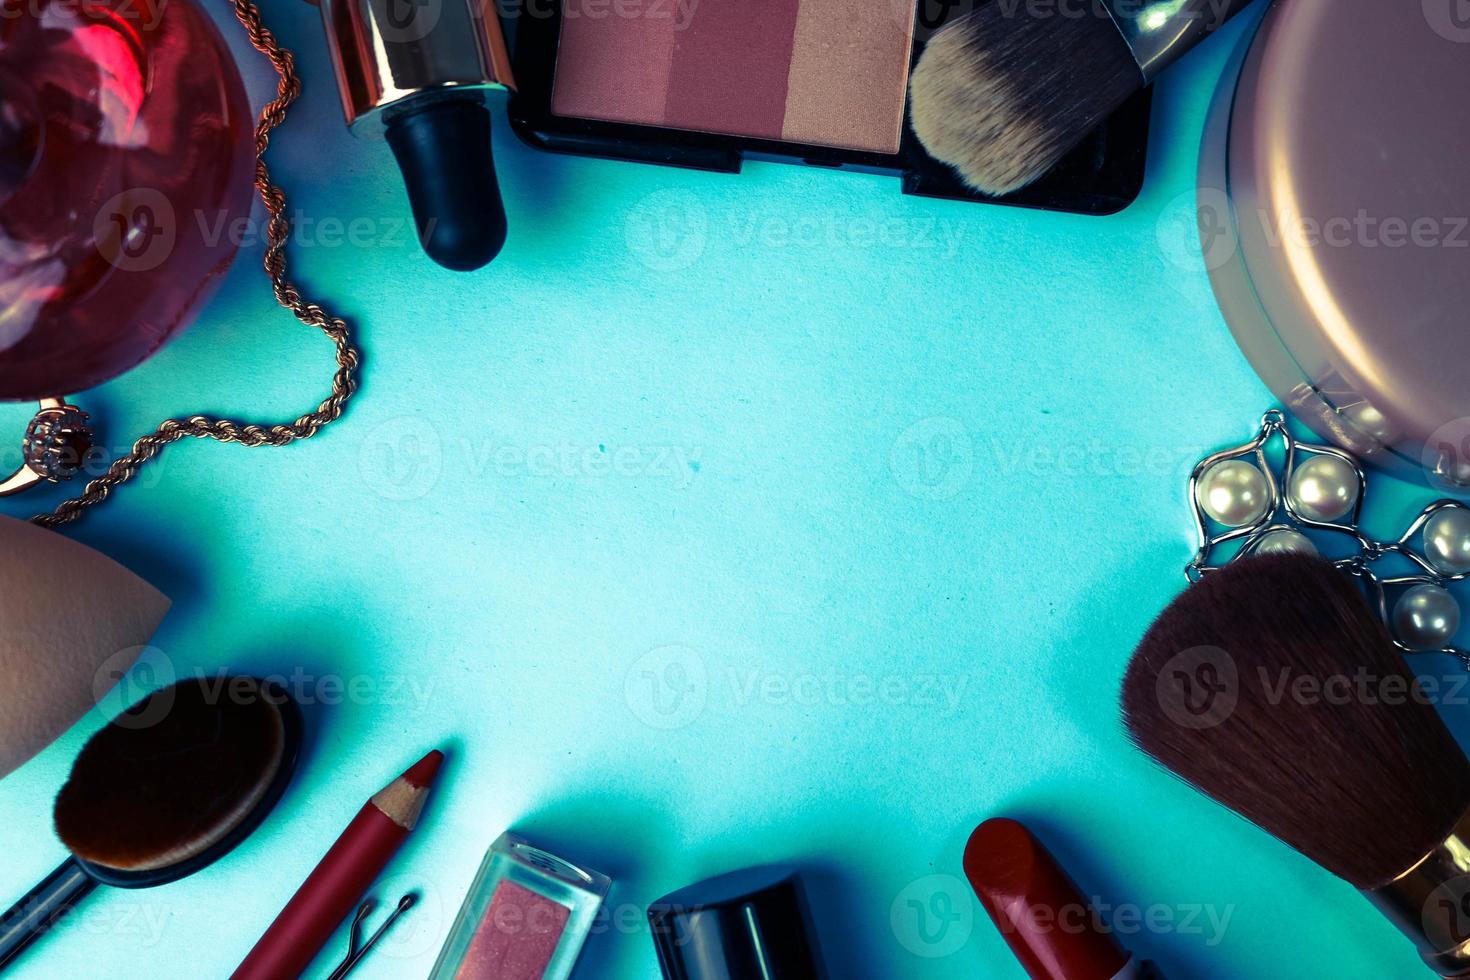 kader van een reeks van vrouw schoonheidsmiddelen van een lippenstift, een markeerstift, een potlood voor lippen, borstels, borstels, parfum, poeder, ornamenten Aan een blauw achtergrond. schoonheid doos vlak leggen. top visie foto